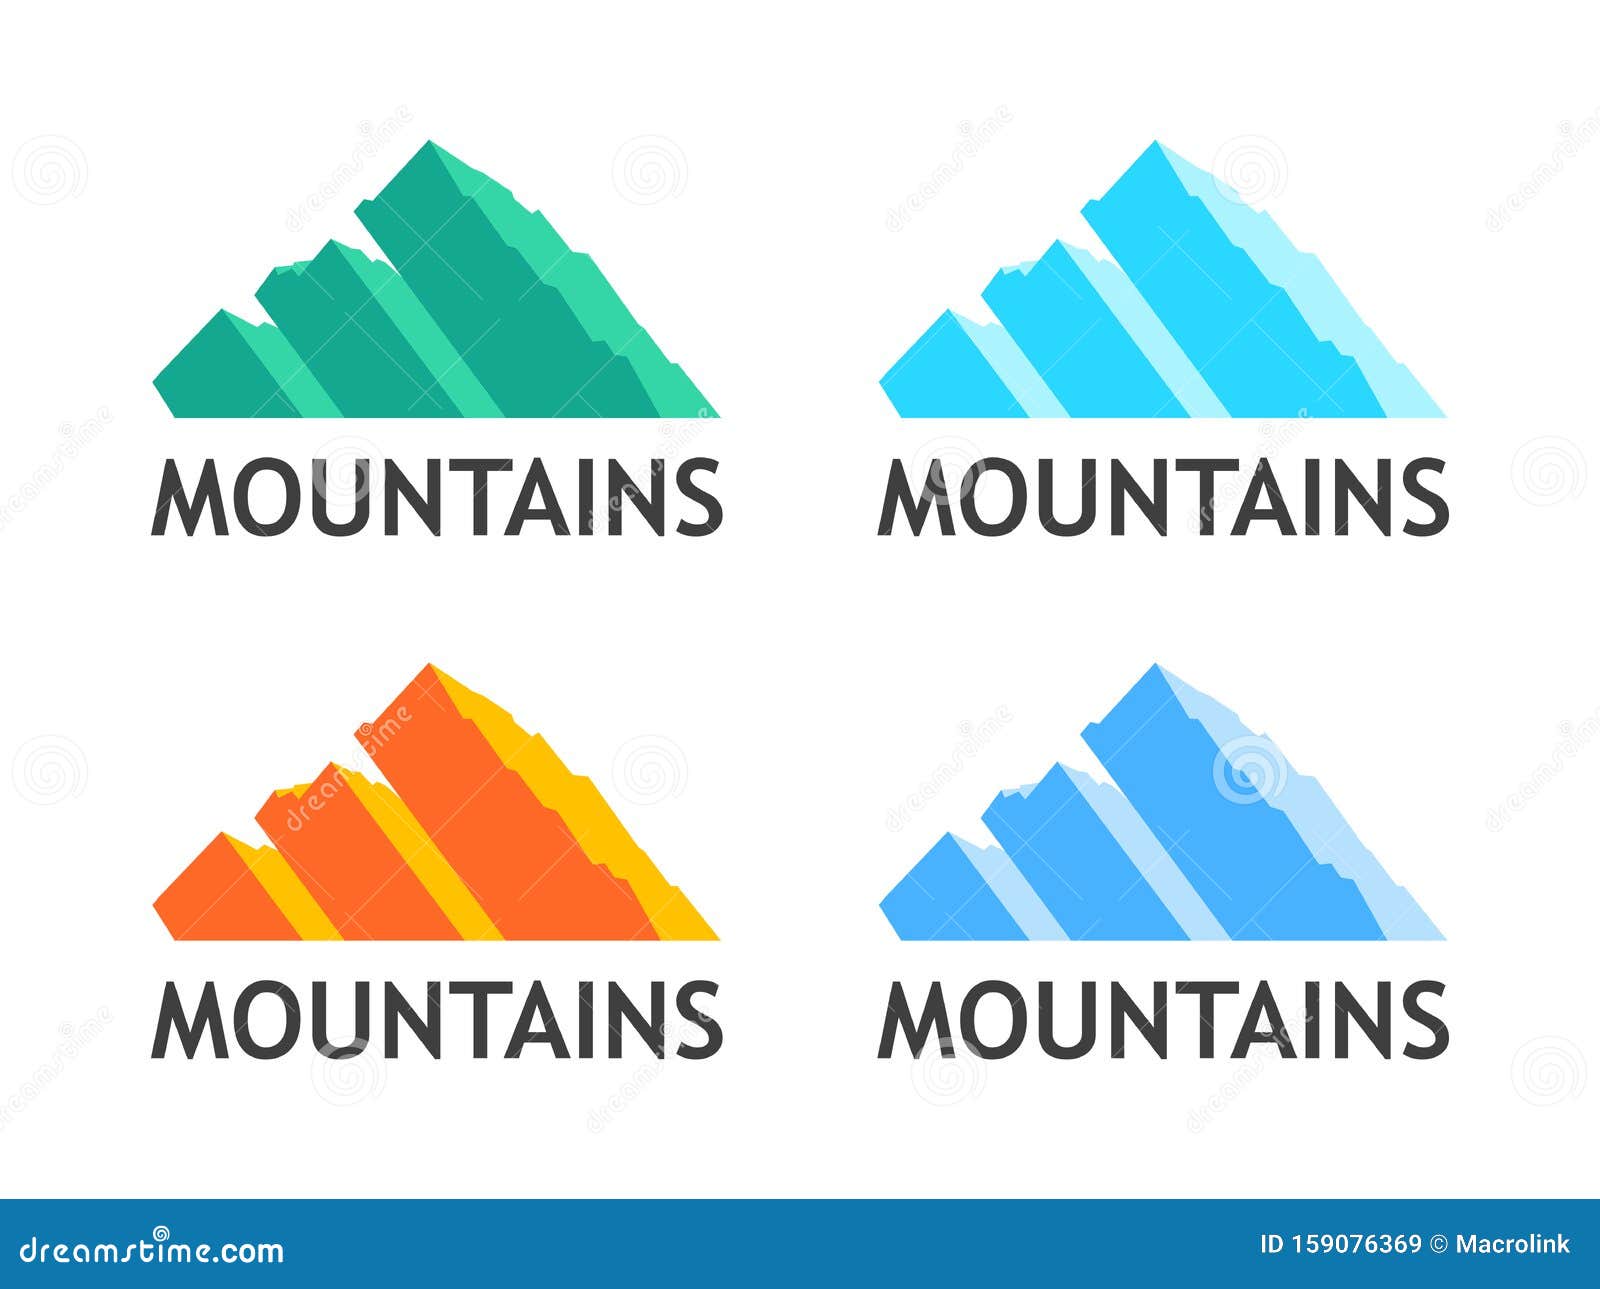 adidas logo mountain